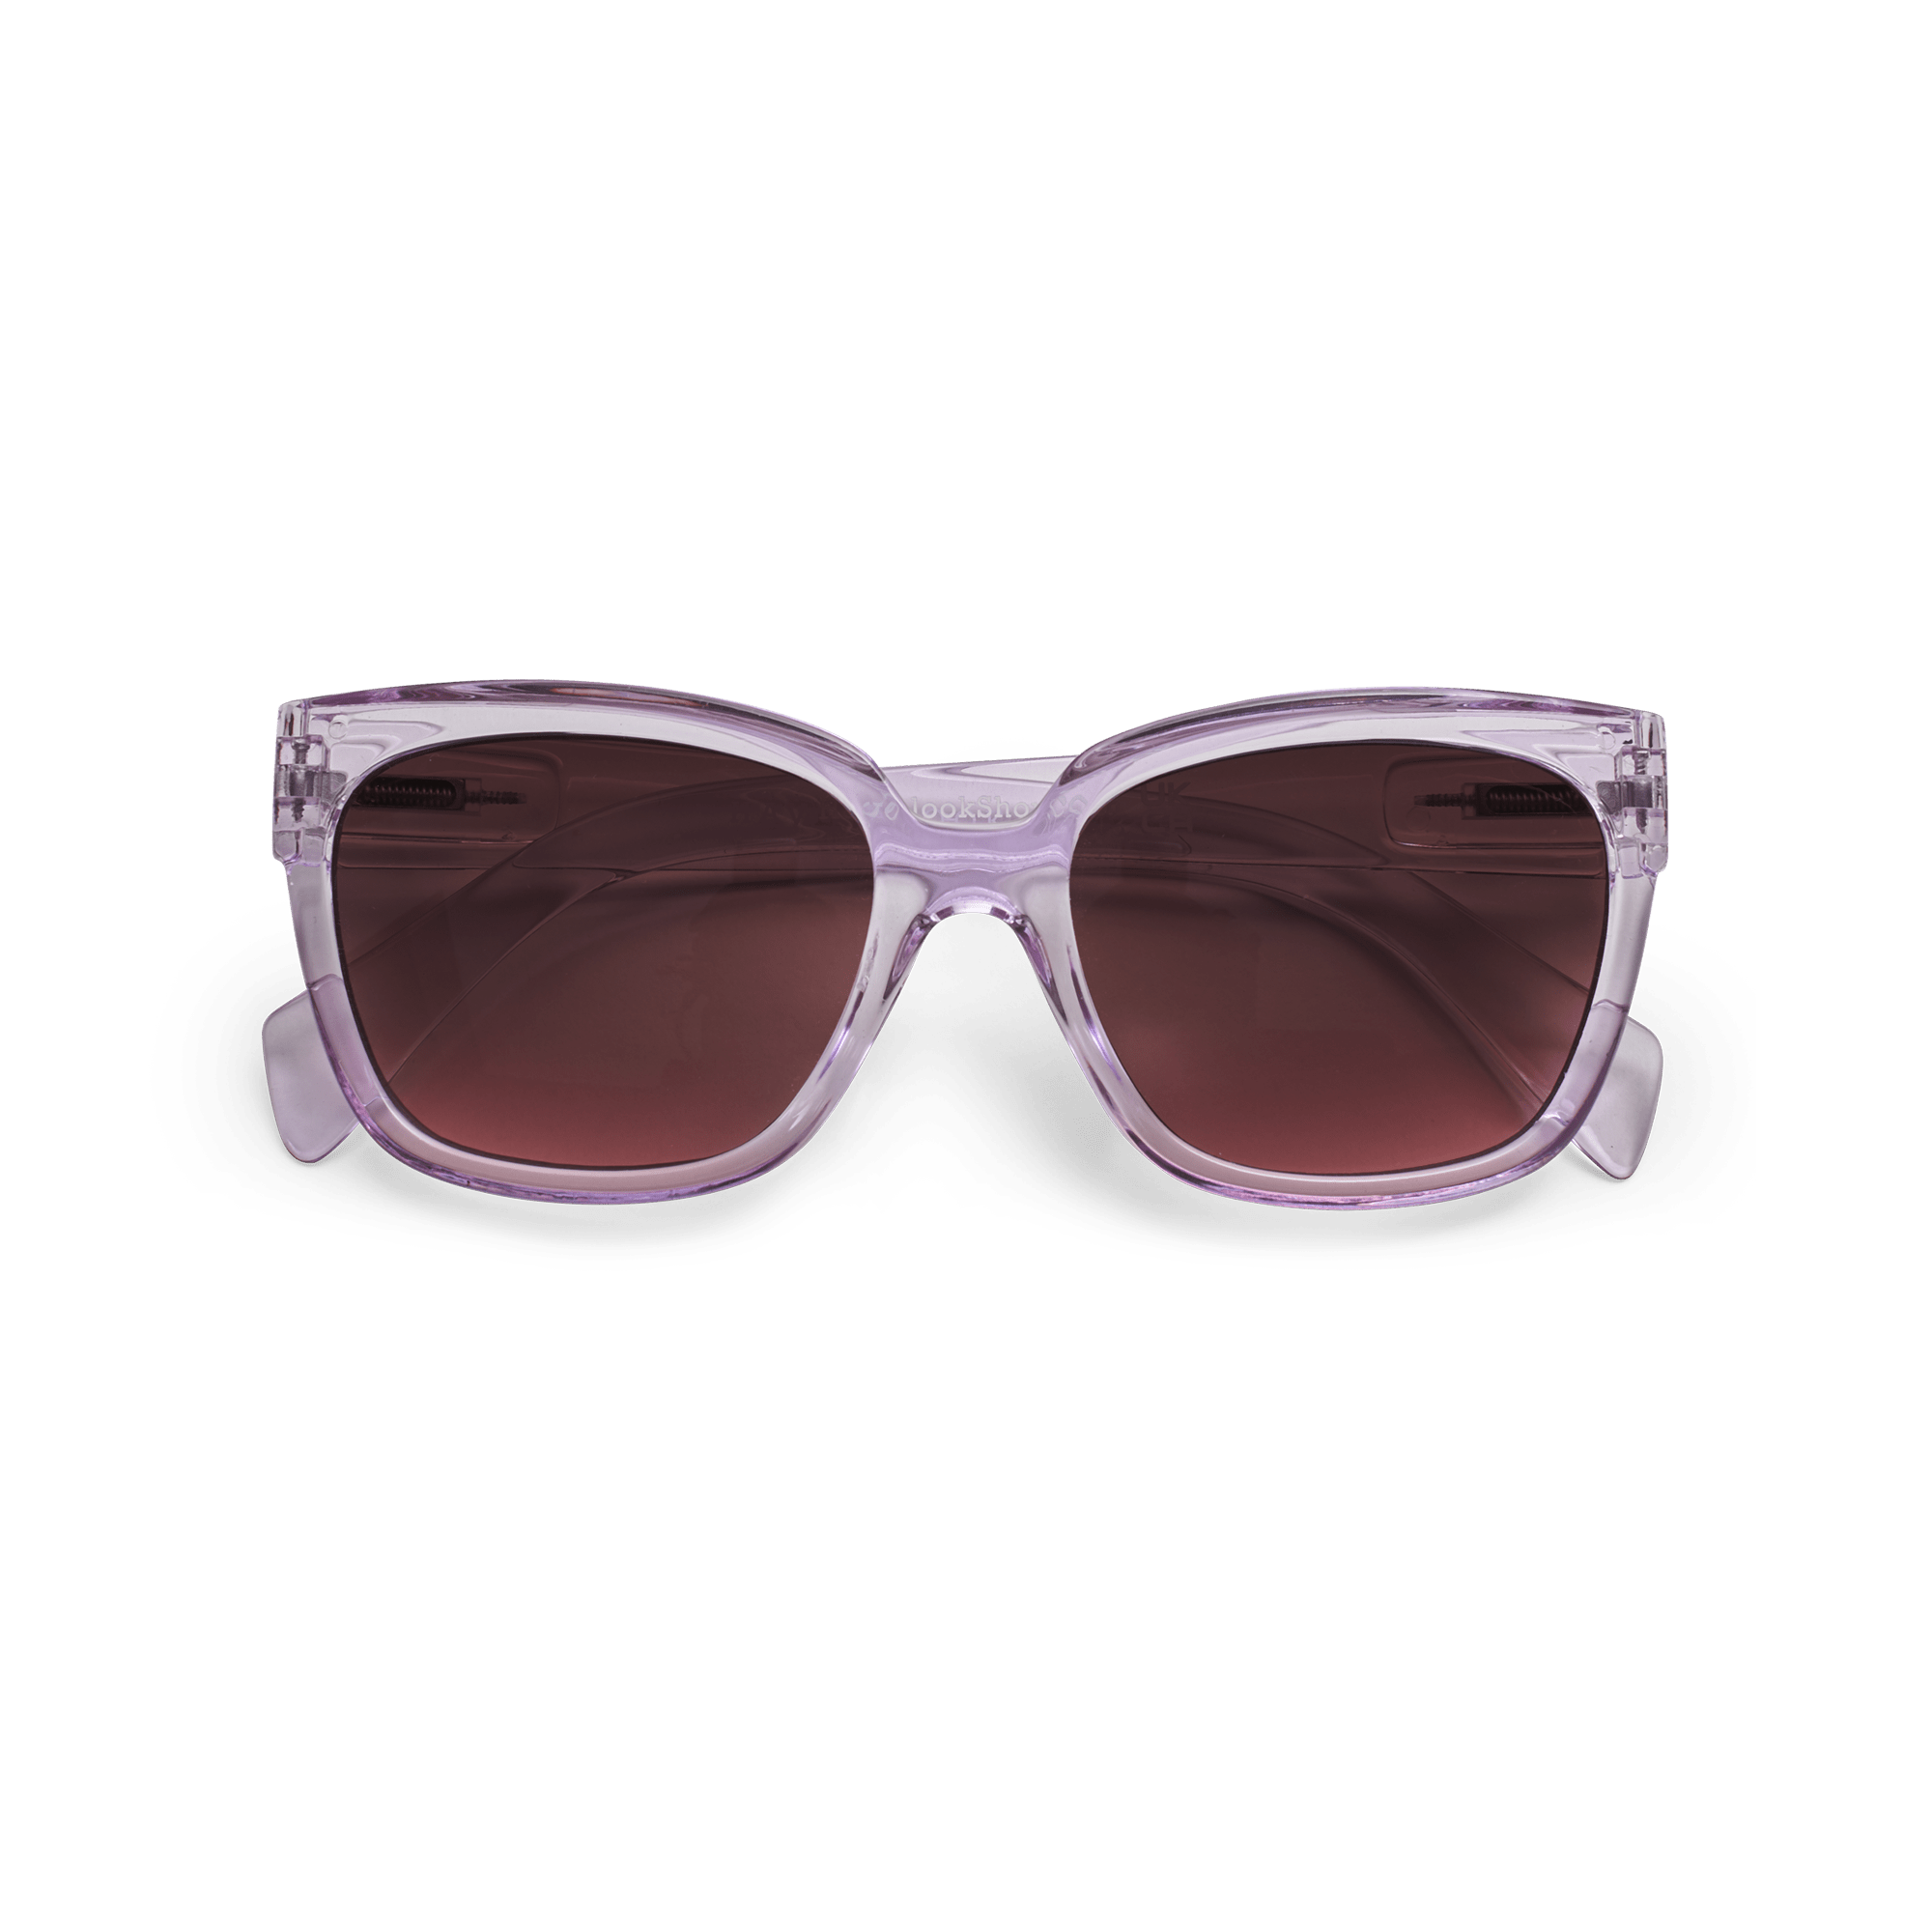 Sonnenbrillen Mood - lilac aus Have A Look